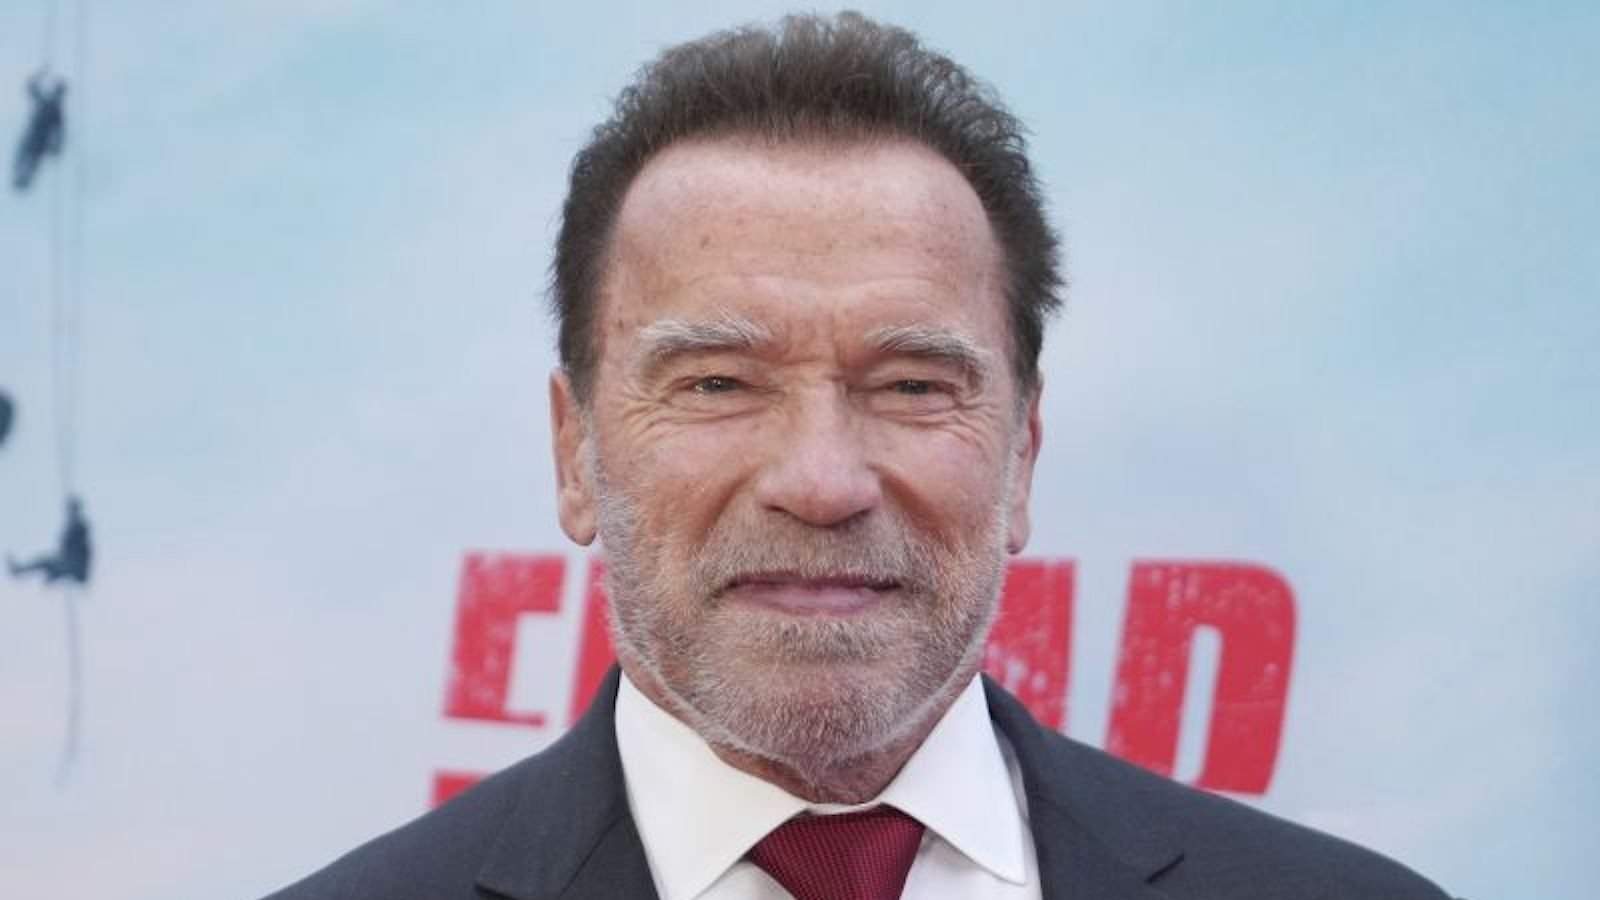 El momento más incómodo que hemos visto de Arnold Schwarzenegger